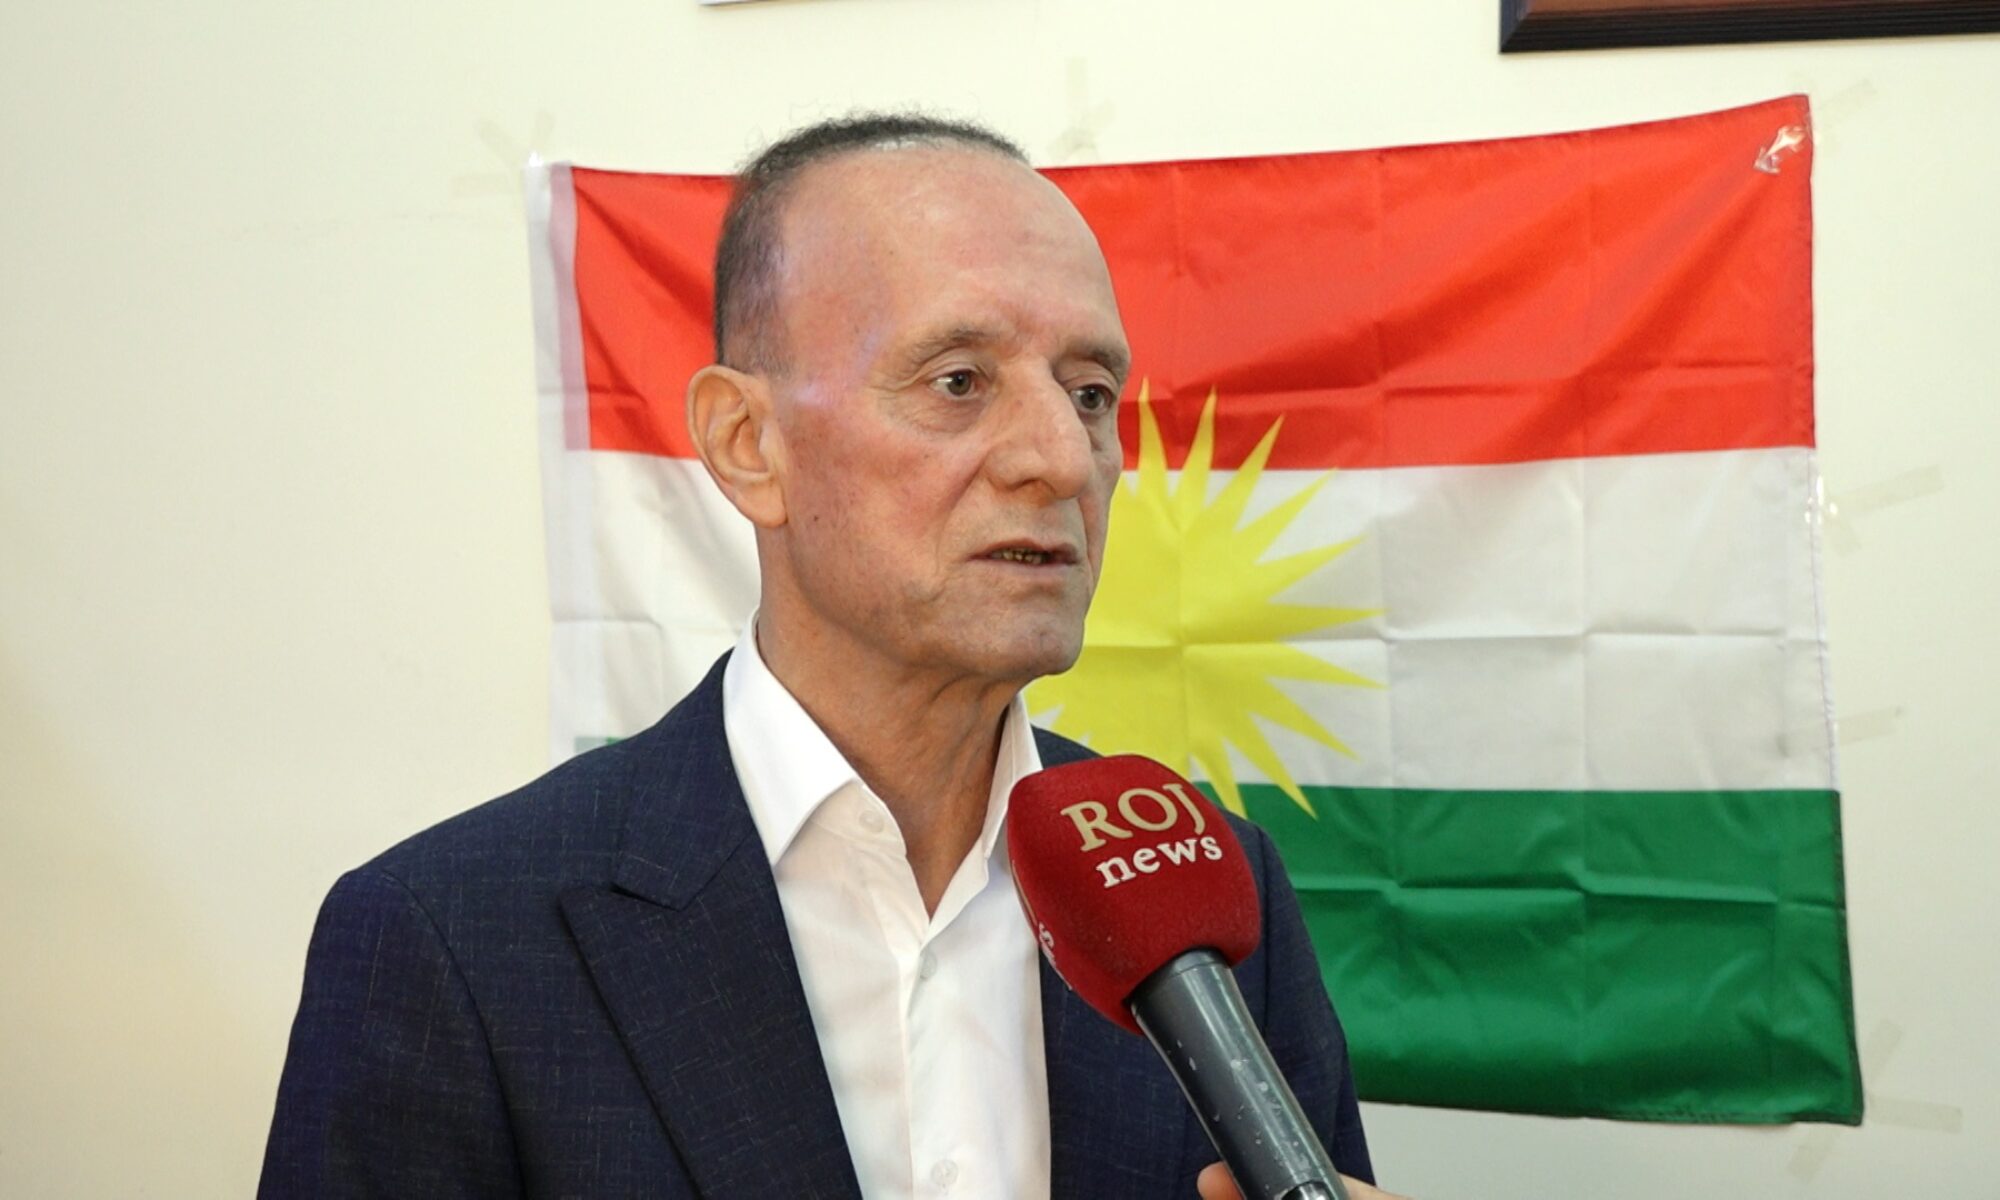 Roj News'in haberi çarpıttığı ortaya çıktı, fraksiyon başkanı tekzip istiyor Mihêdîn Hesen Kürdistan, Azadi fraksiyonu